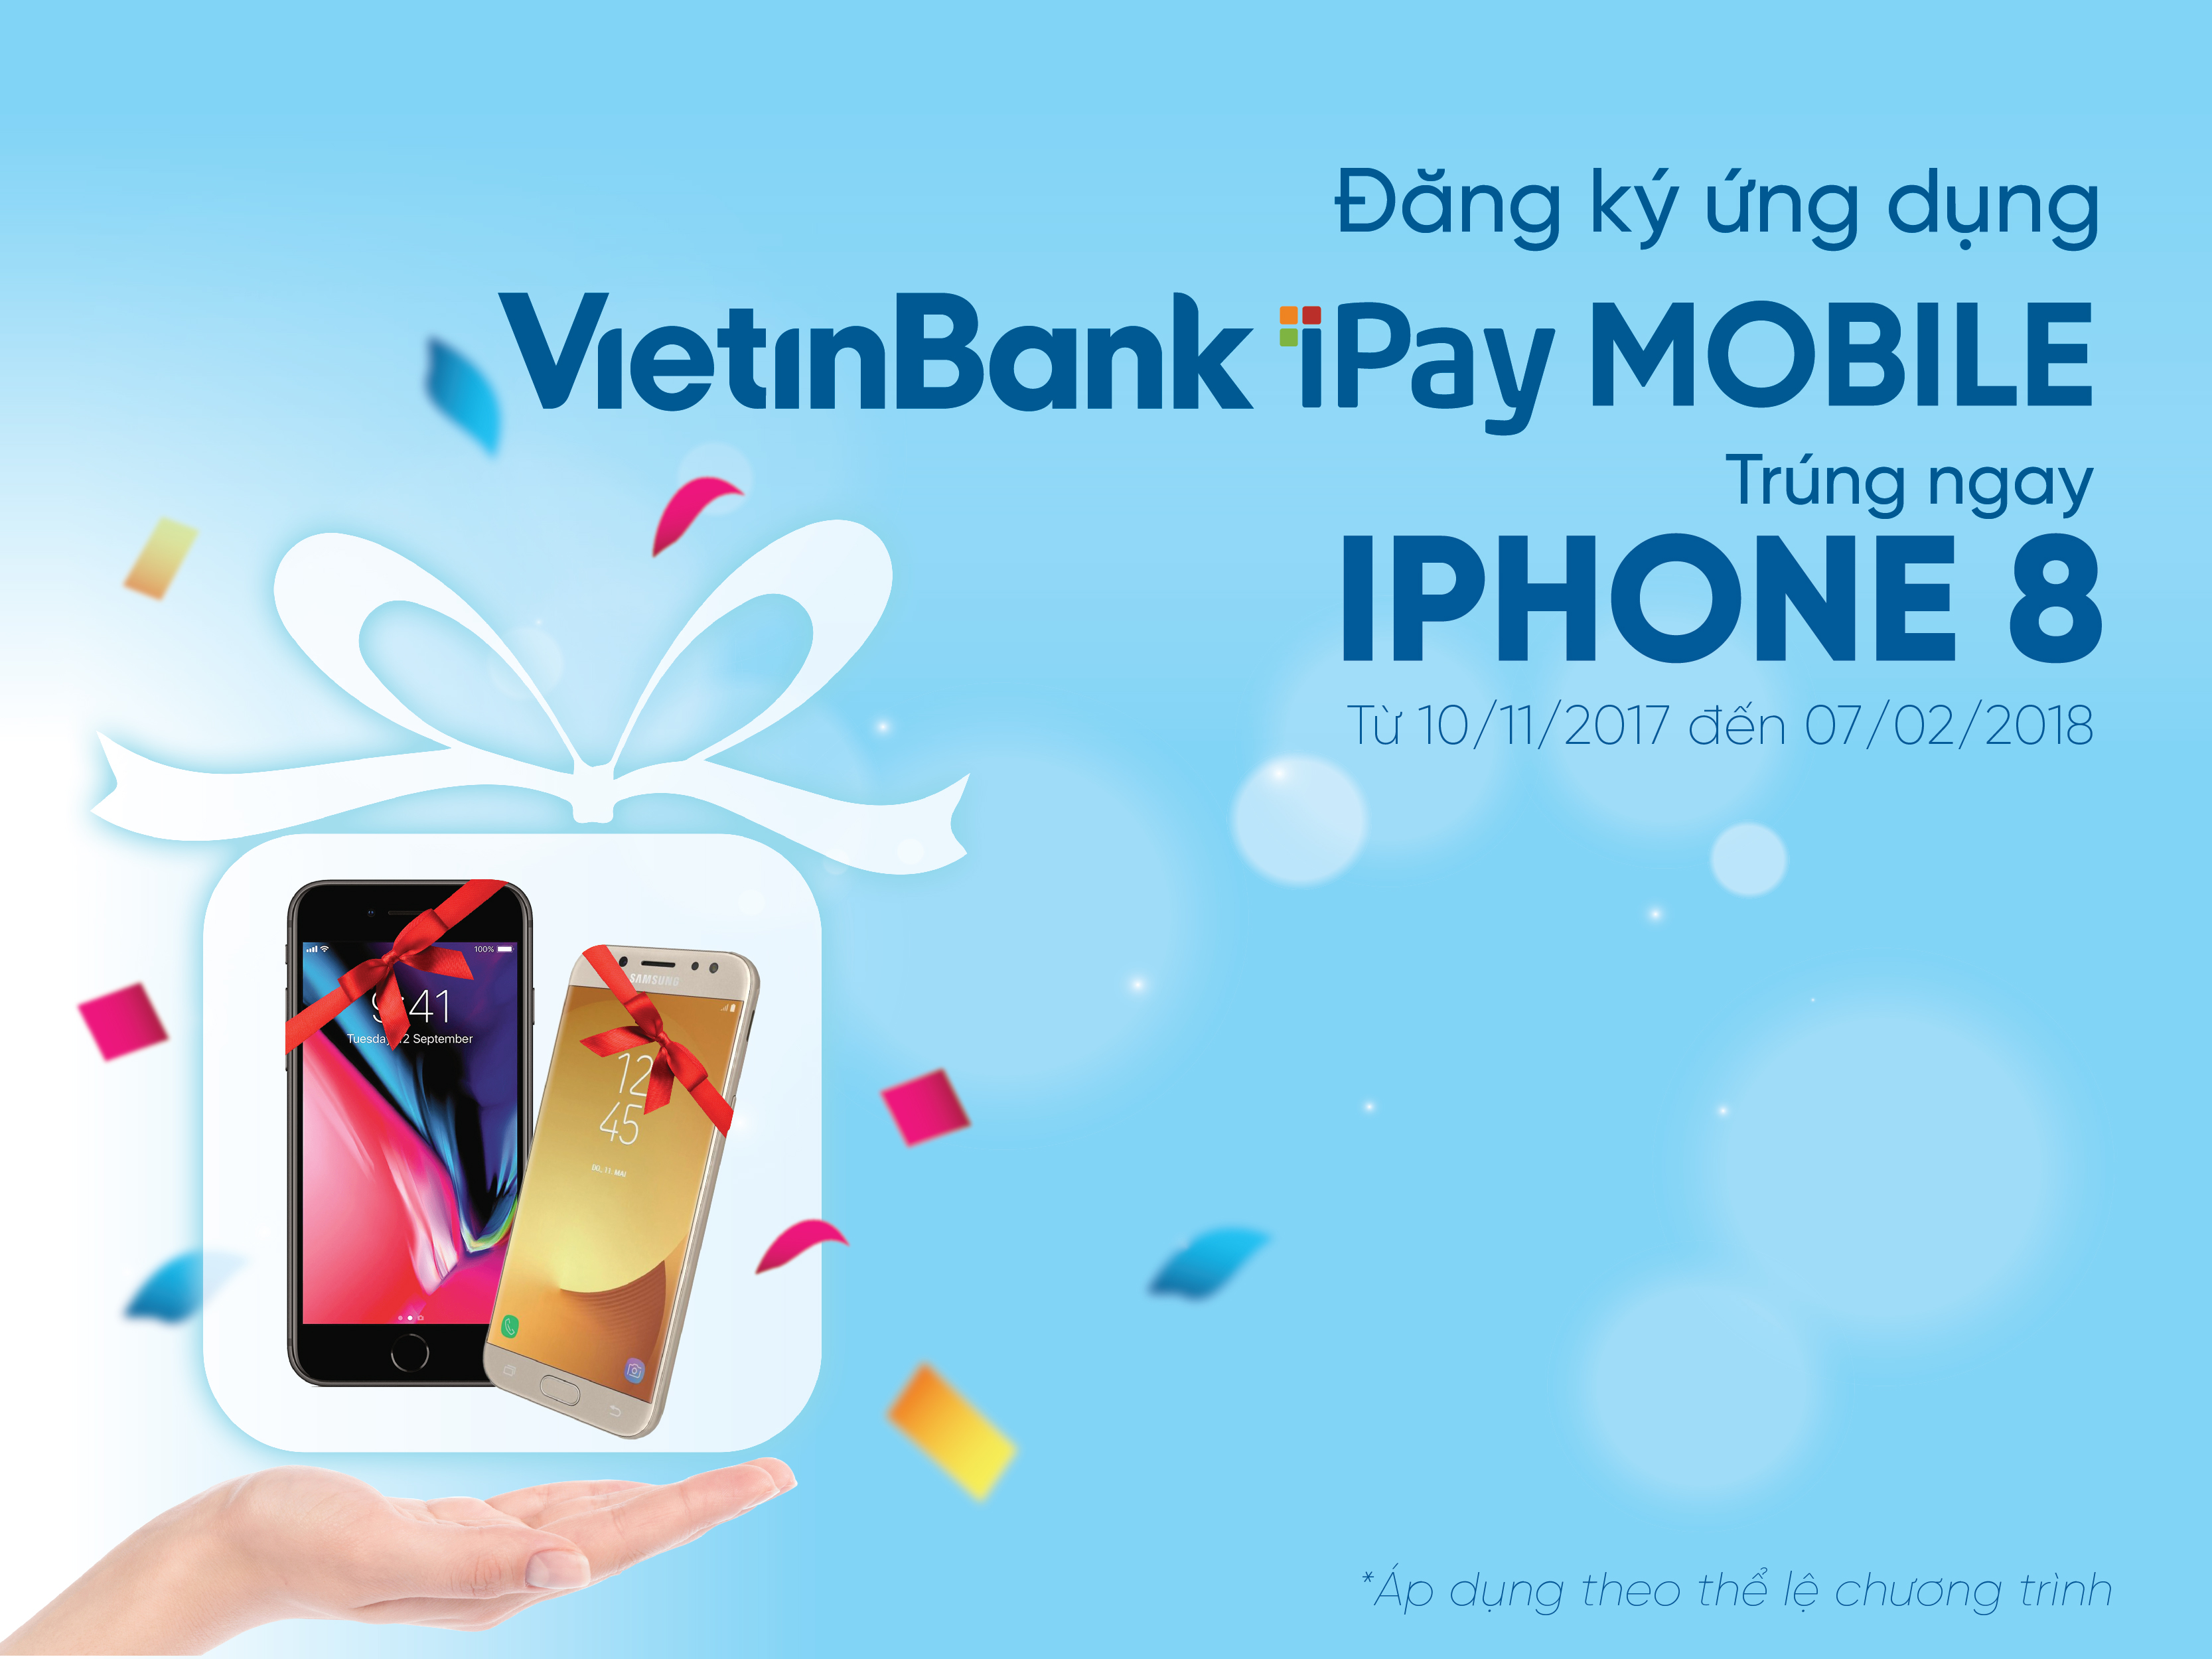 Trải nghiệm ứng dụng VietinBank iPay Mobile, Trúng ngay iPhone 8